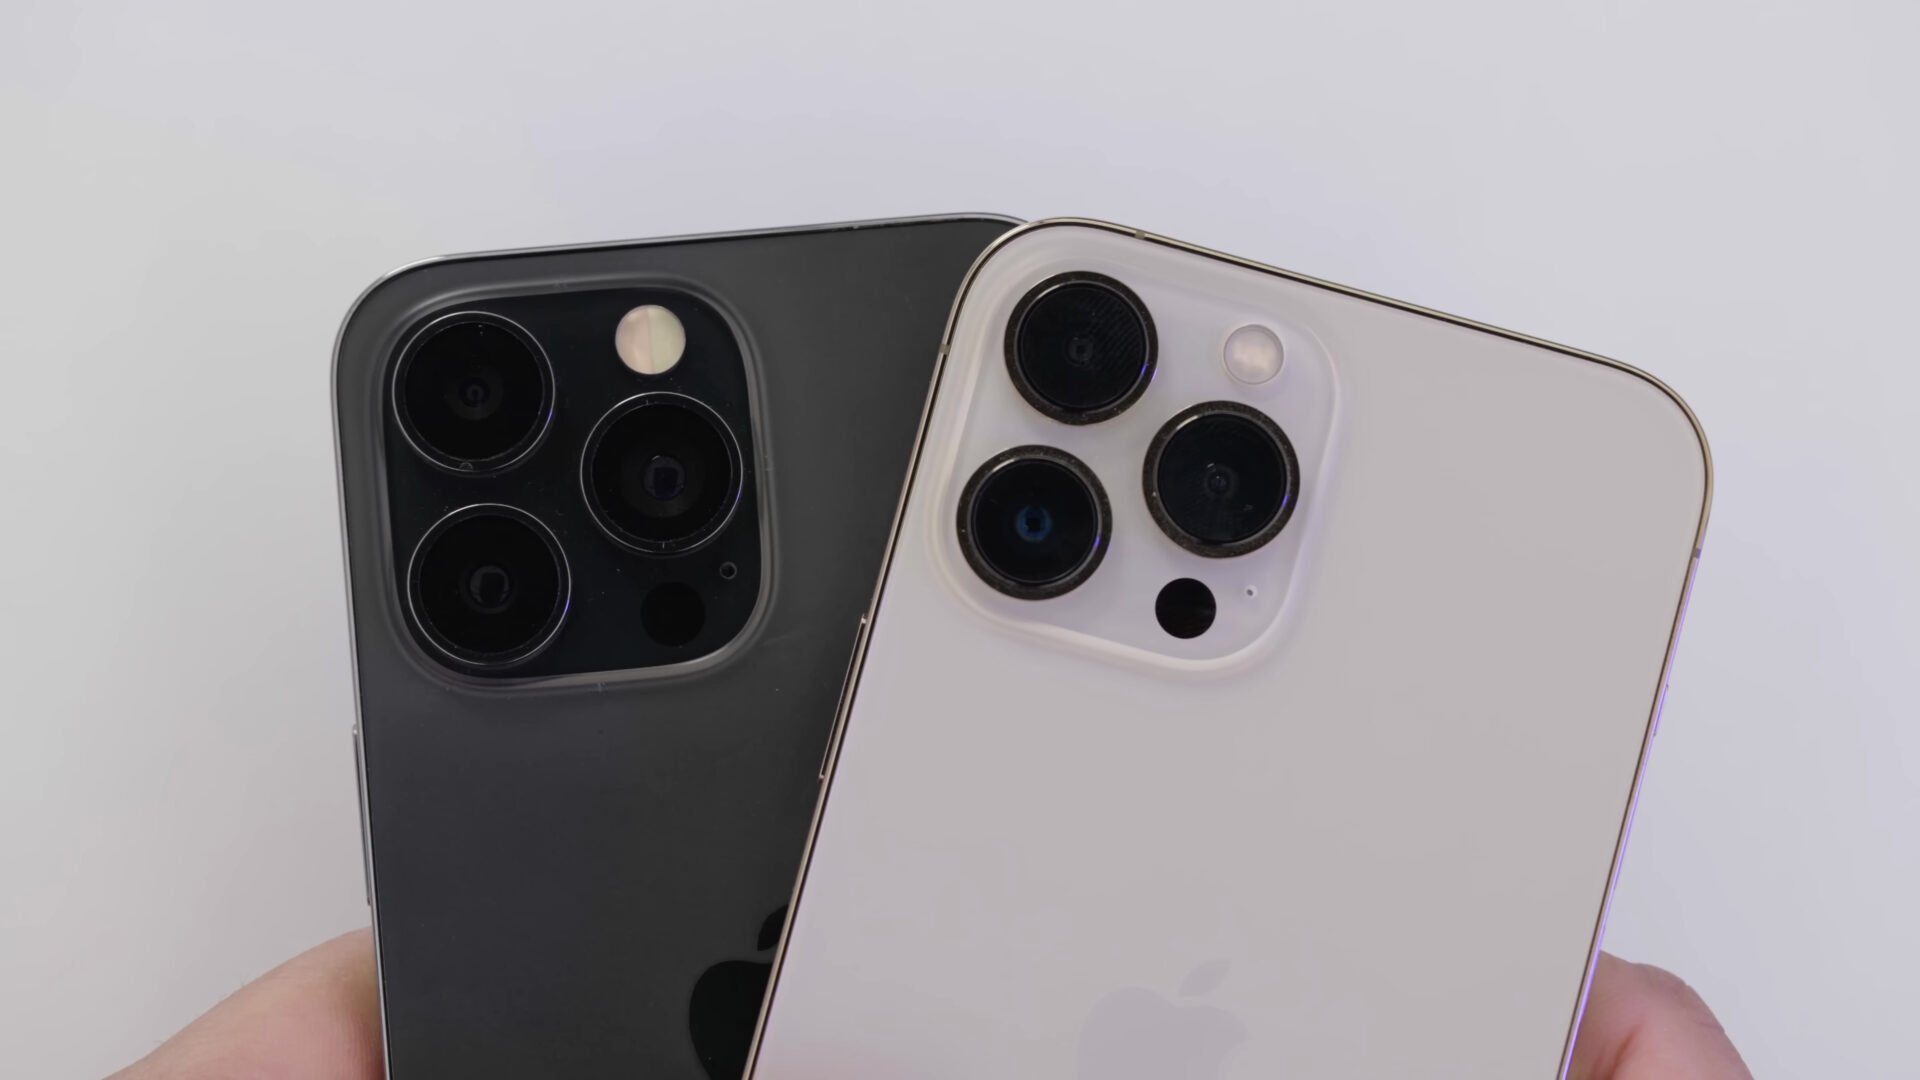 ซัปพลายเออร์ผู้ผลิตเลนส์กล้องสำหรับ iPhone14 ประสบปัญหาผลิตชิ้นส่วนไม่ได้คุณภาพ!